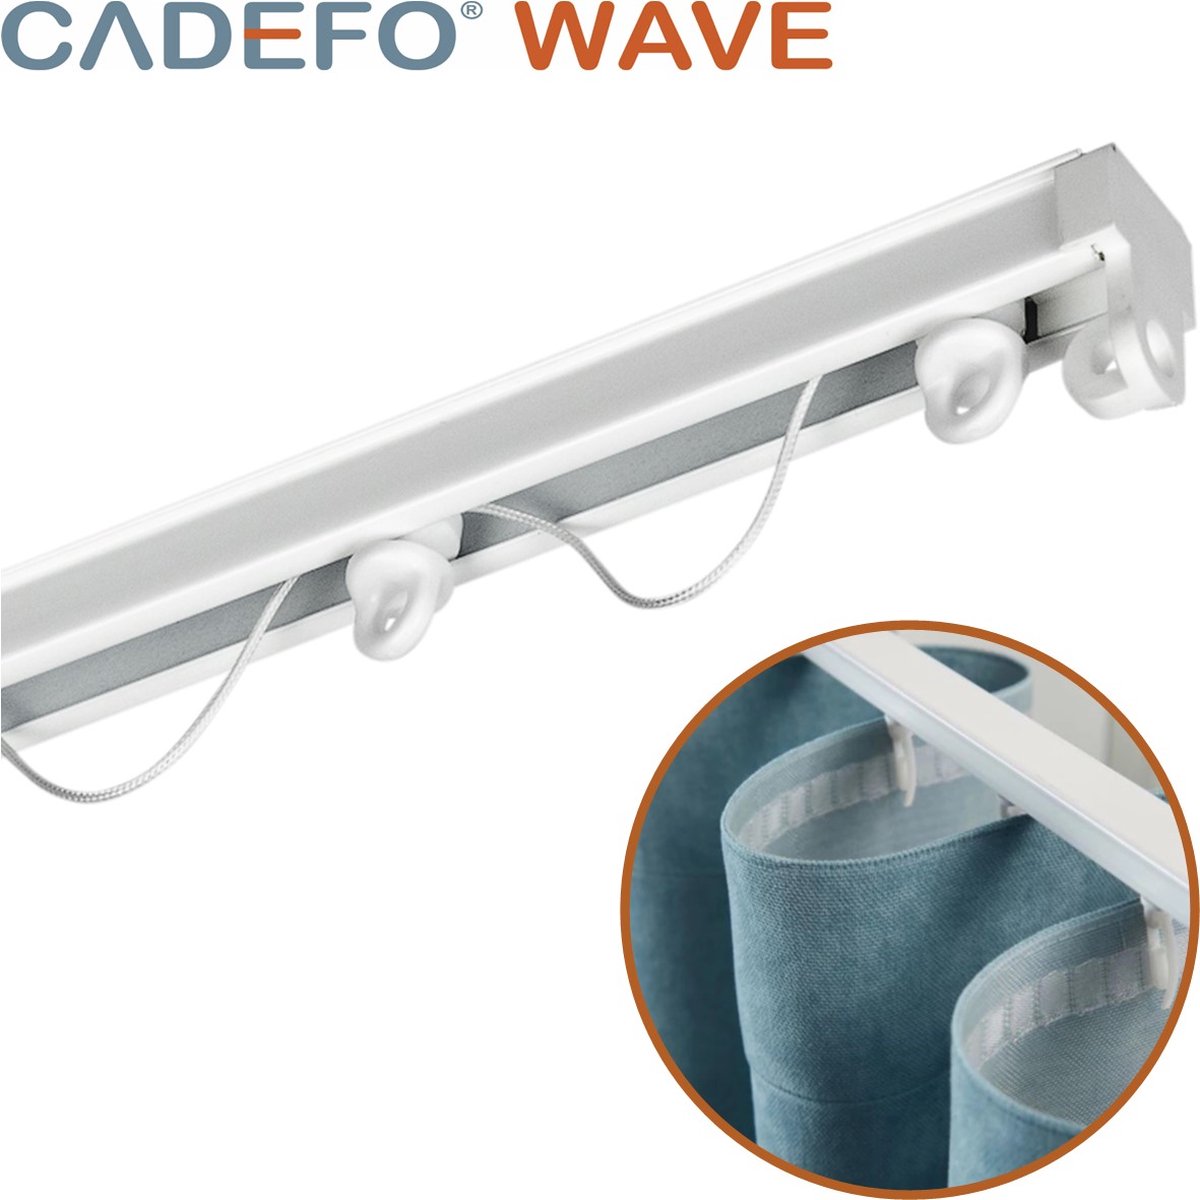 CADEFO WAVE (151 - 200 cm) Gordijnrails - Compleet op maat! - UIT 1 STUK - Leverbaar tot 6 meter - Plafondbevestiging - Lengte 198 cm